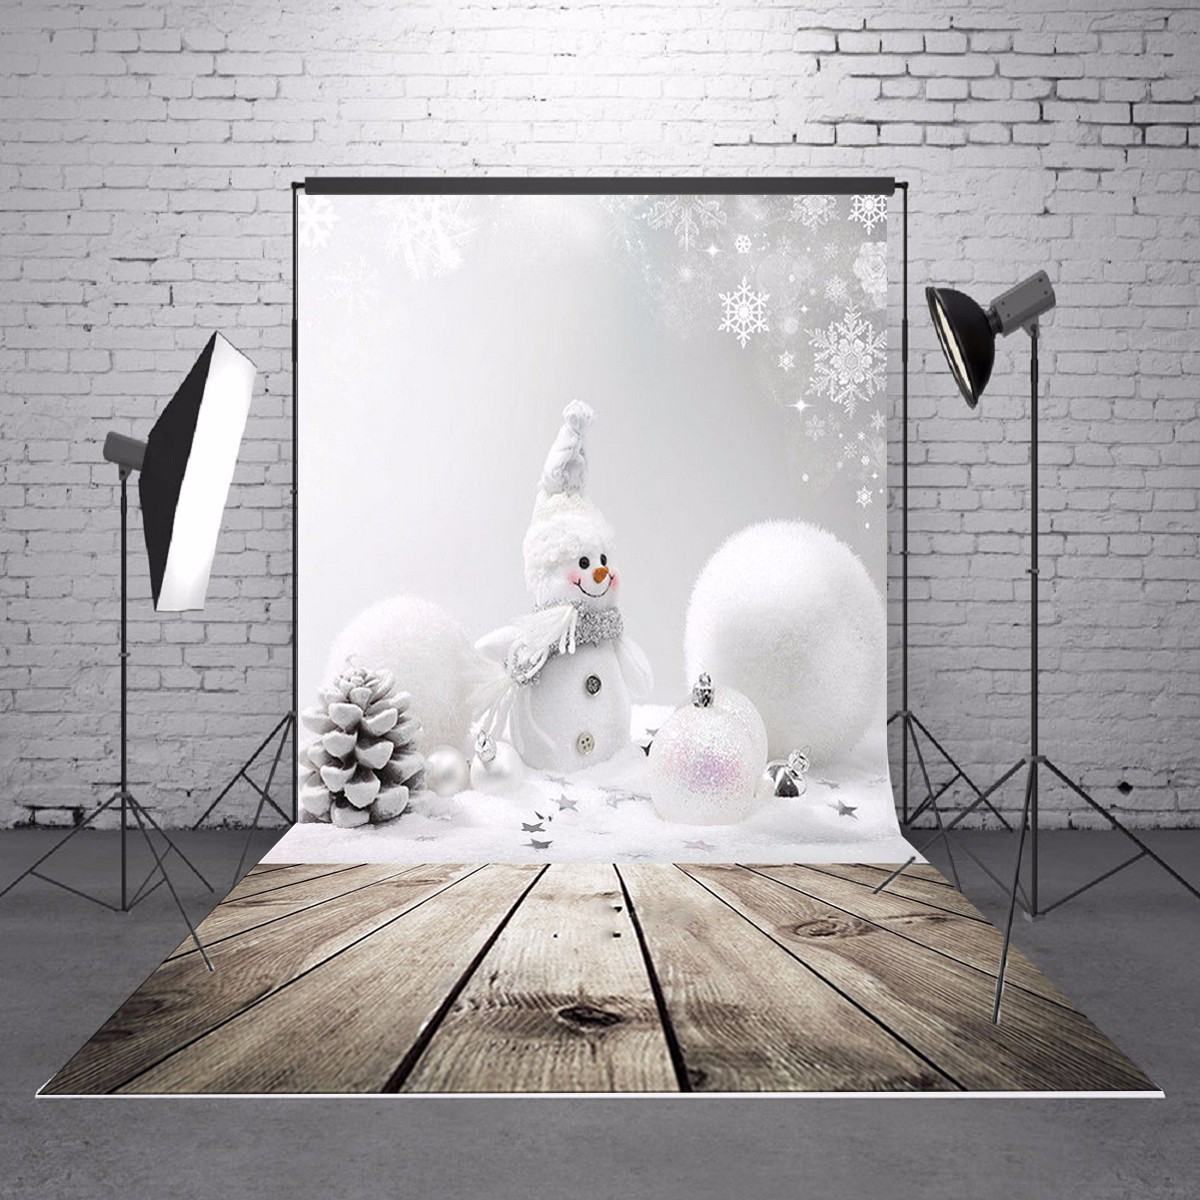 Freya 0.9M X 1.5M Vinyl Fotografie Achtergrond Kerst Thema Sneeuwpop Fotografische Achtergronden Voor Studio Fotoshoot Props 3x5ft